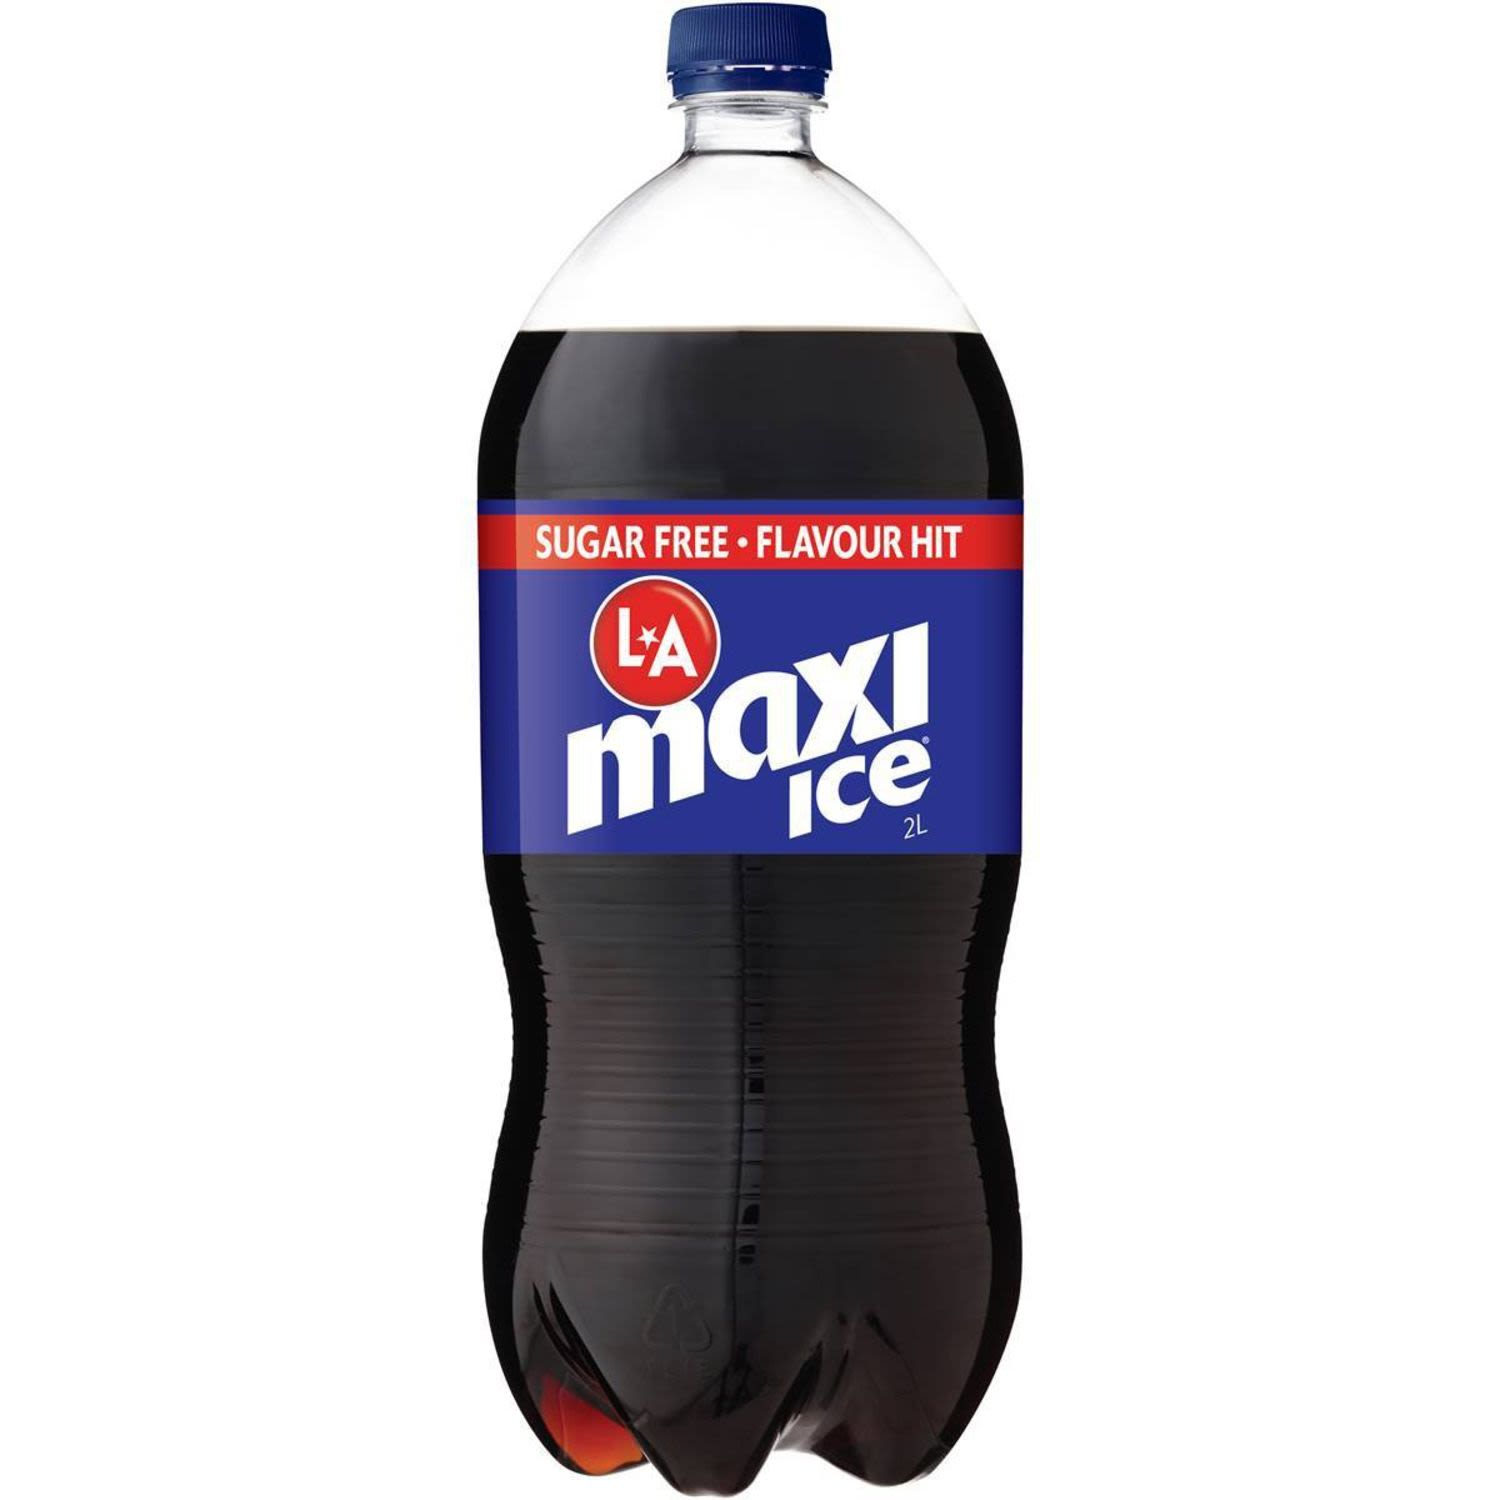 La Ice Cola Maxi Bottle, 2 Litre